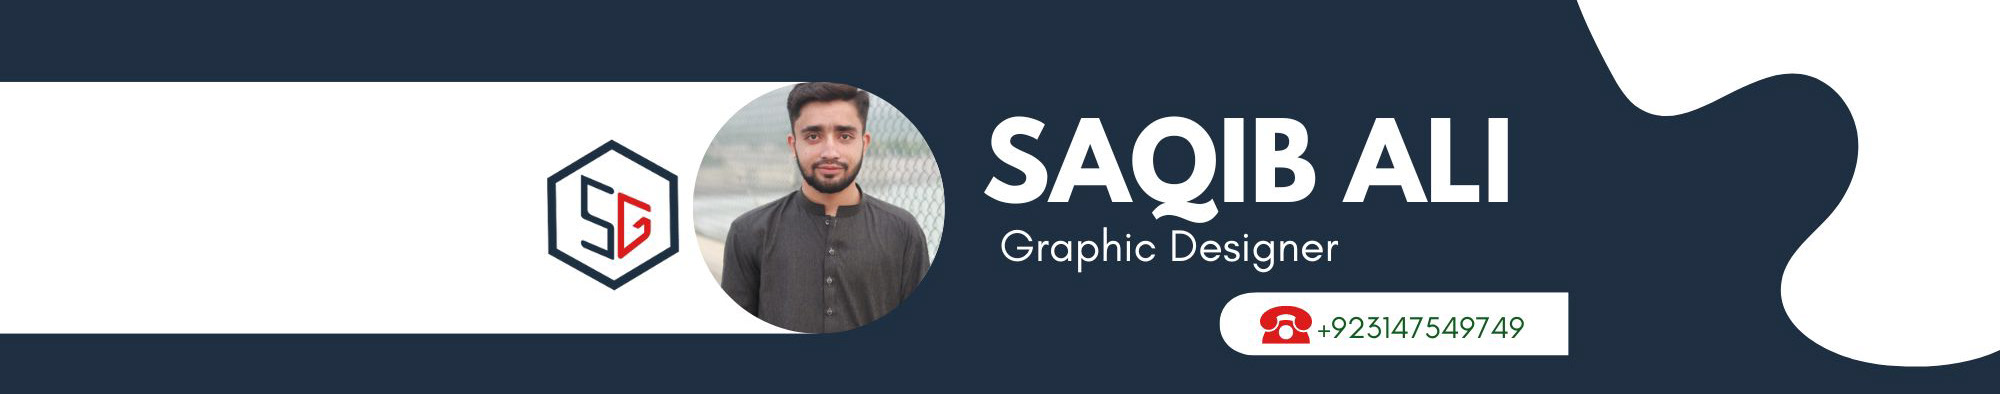 Banner de perfil de Saqib Graphic